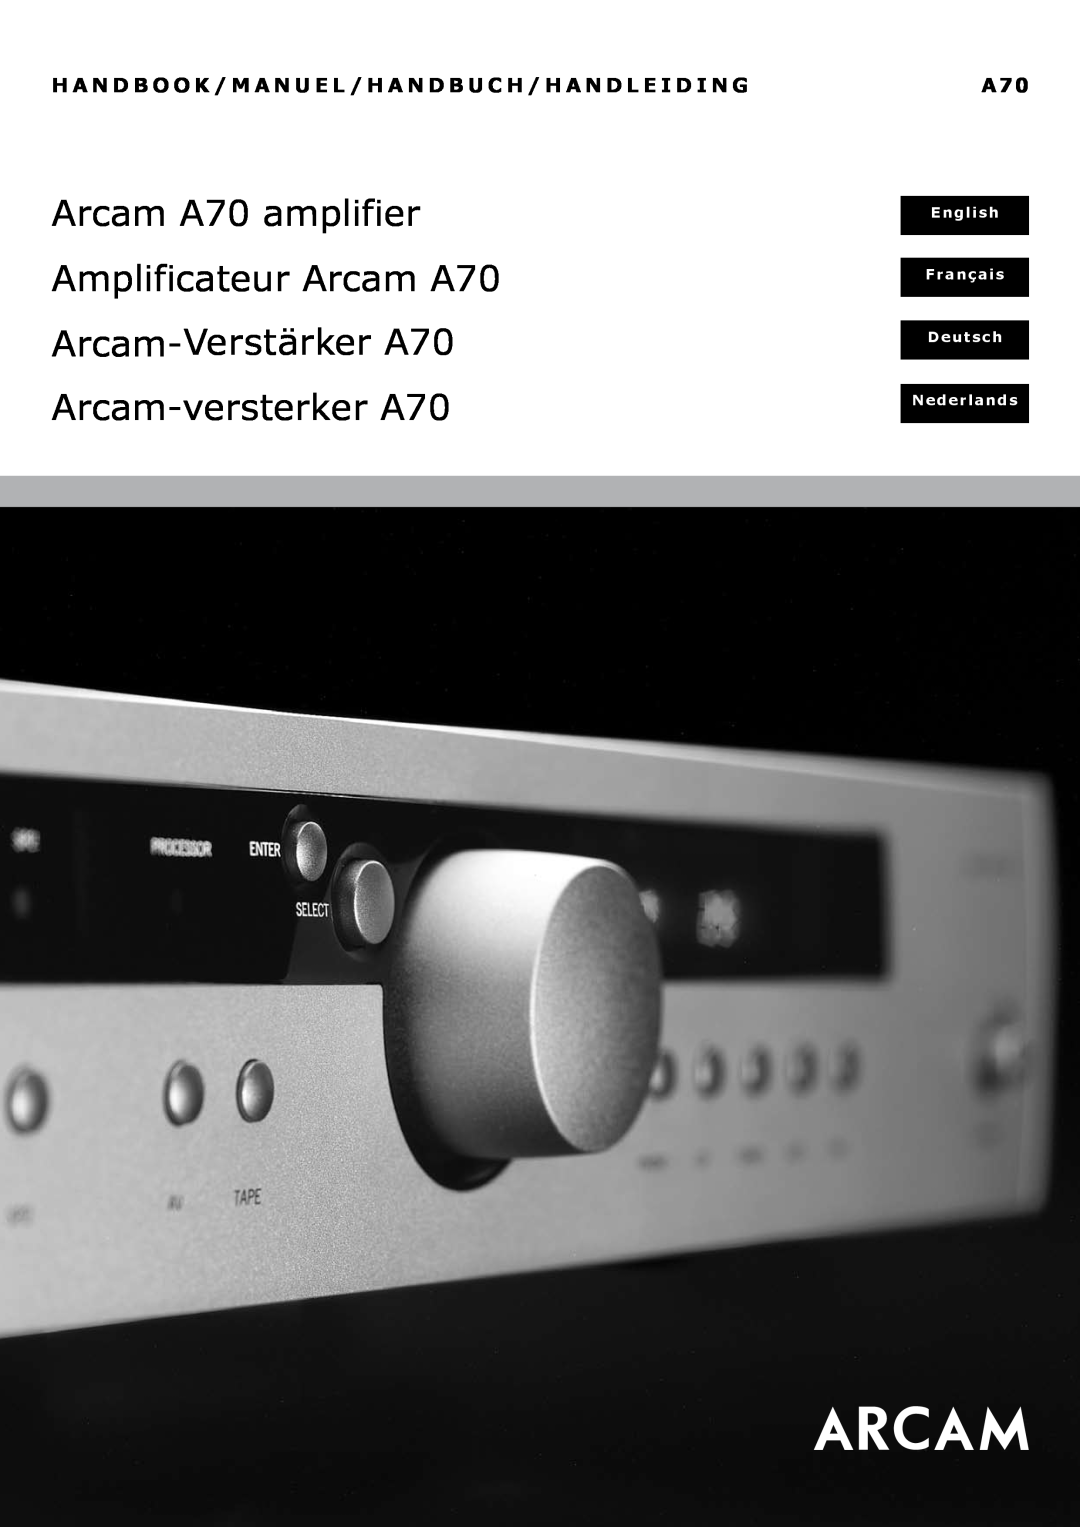 Arcam manual English, Français, Deutsch, Nederlands, Arcam A70 amplifier, Amplificateur Arcam A70, Verstärker A70 